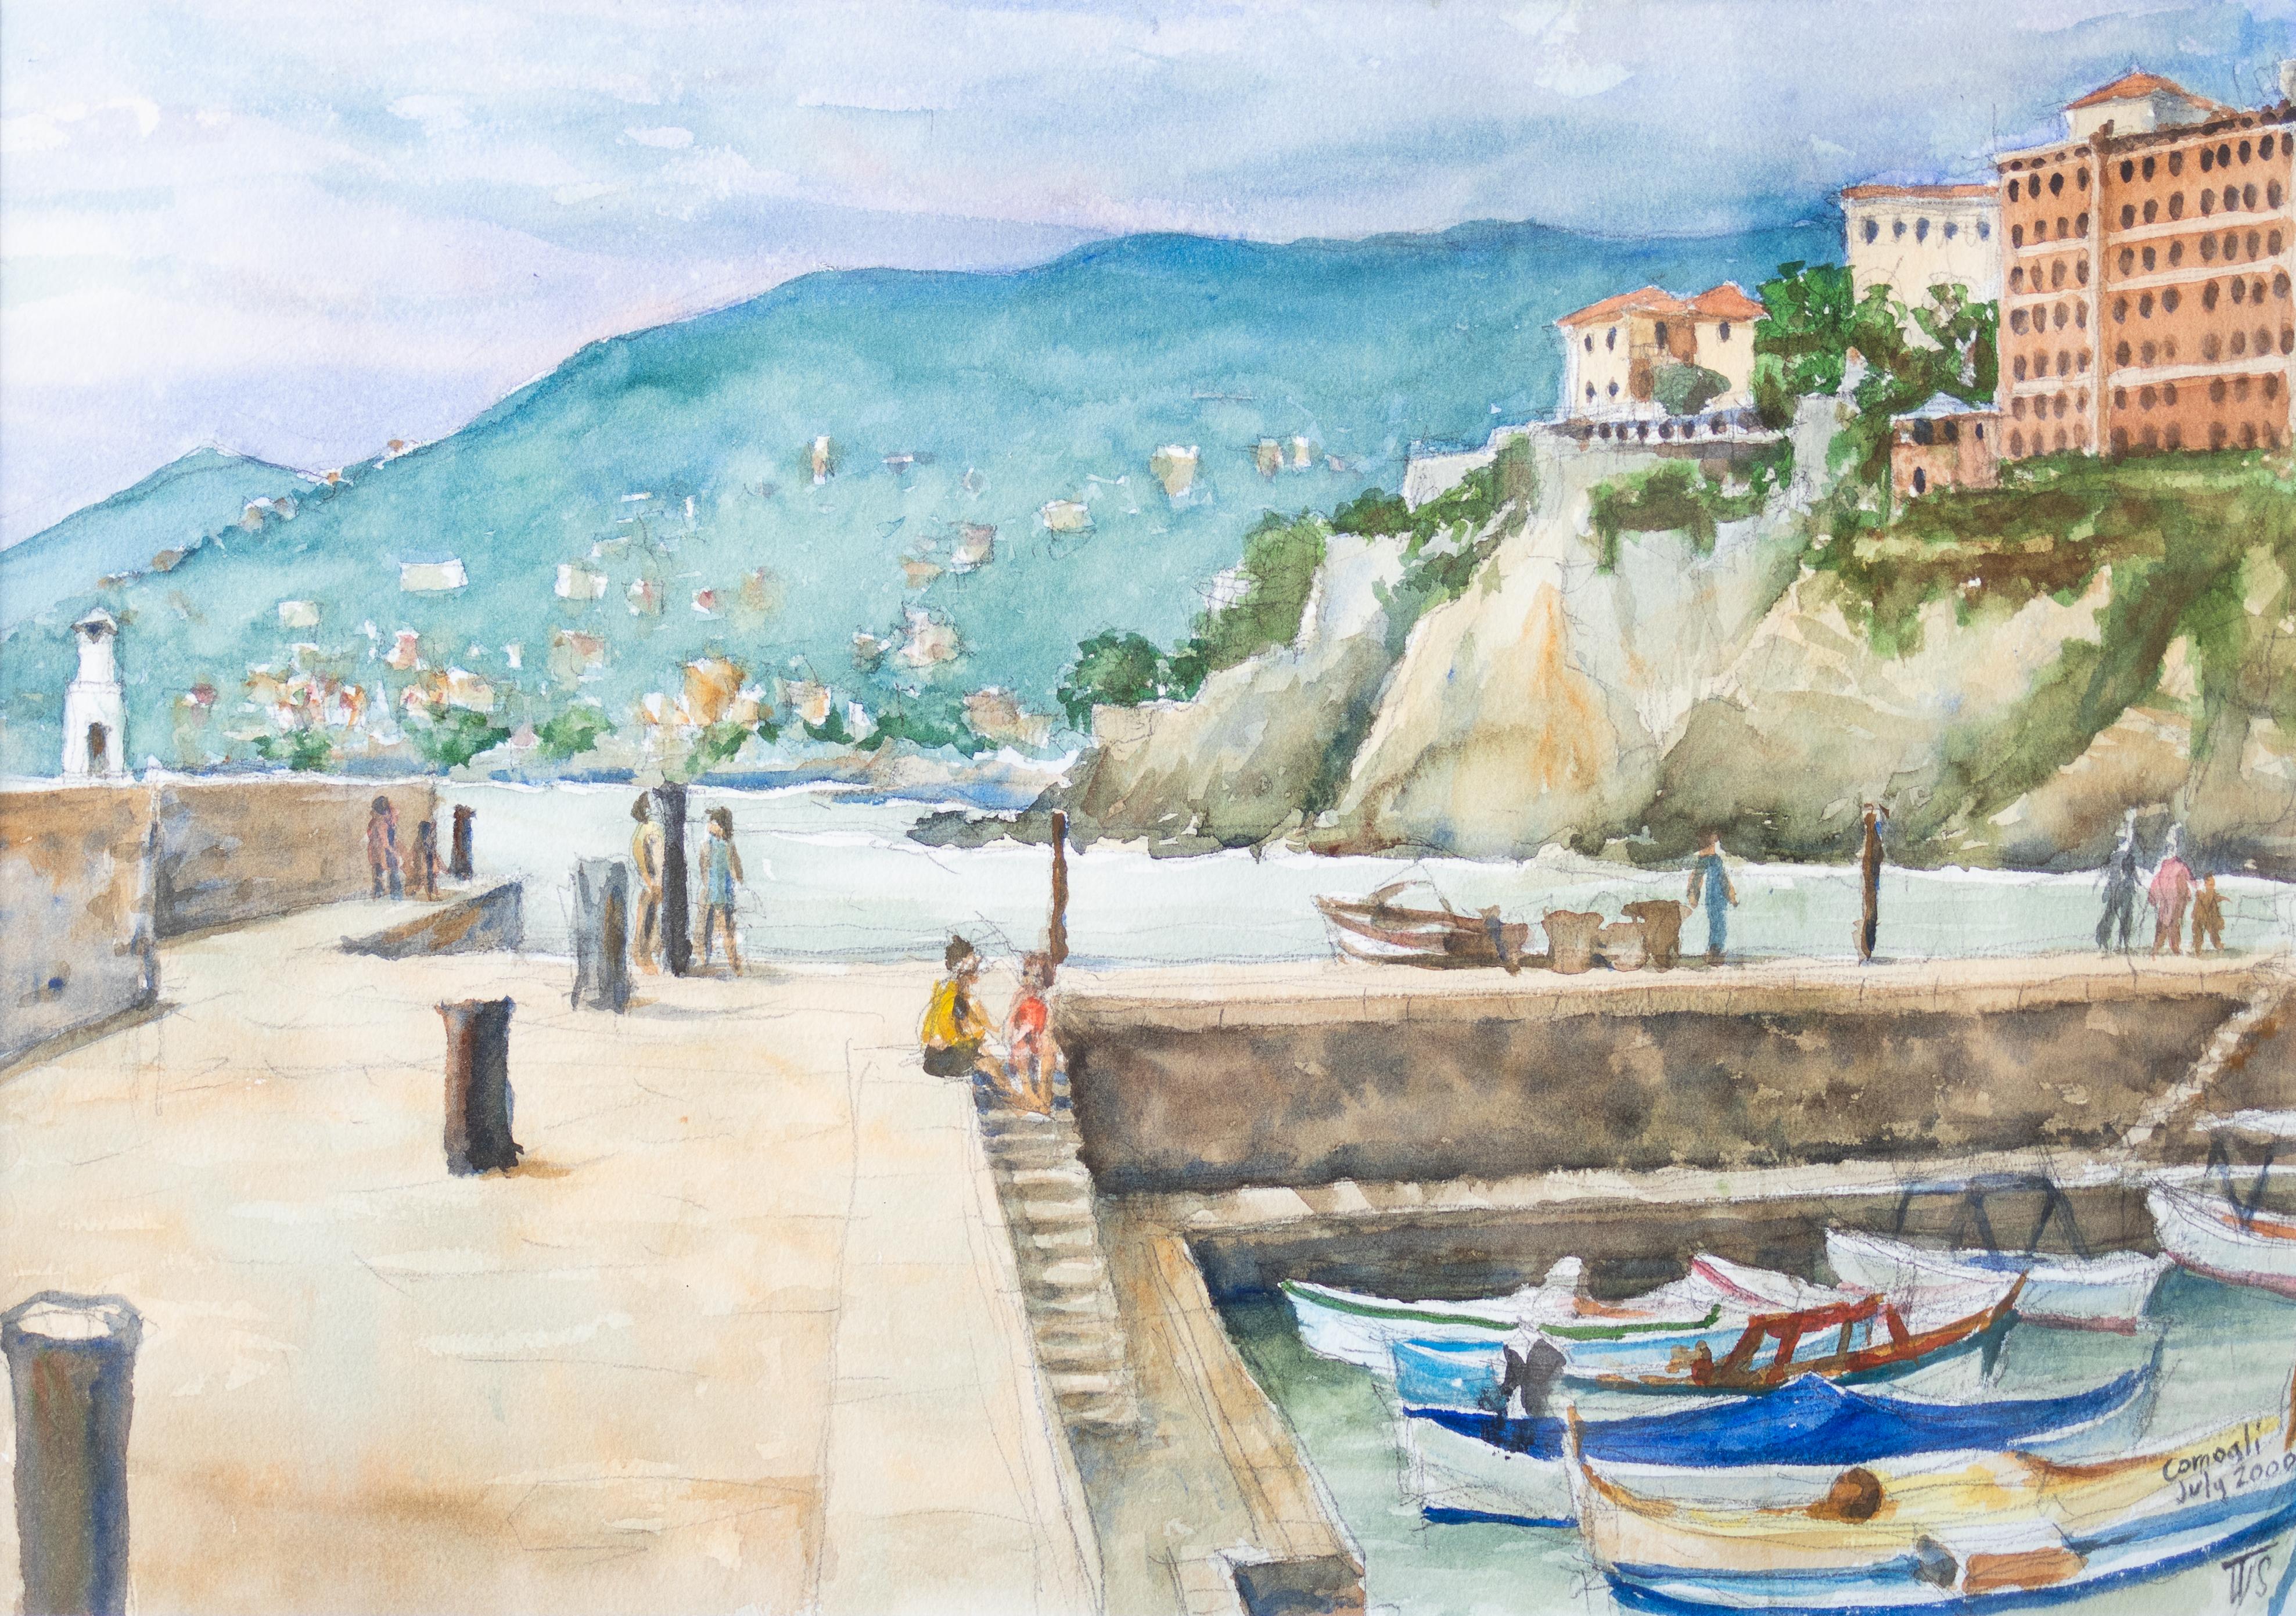 Landscape Art Tom Shefelman - « Avant la tempête » - Vue de la côte italienne depuis un bateau 